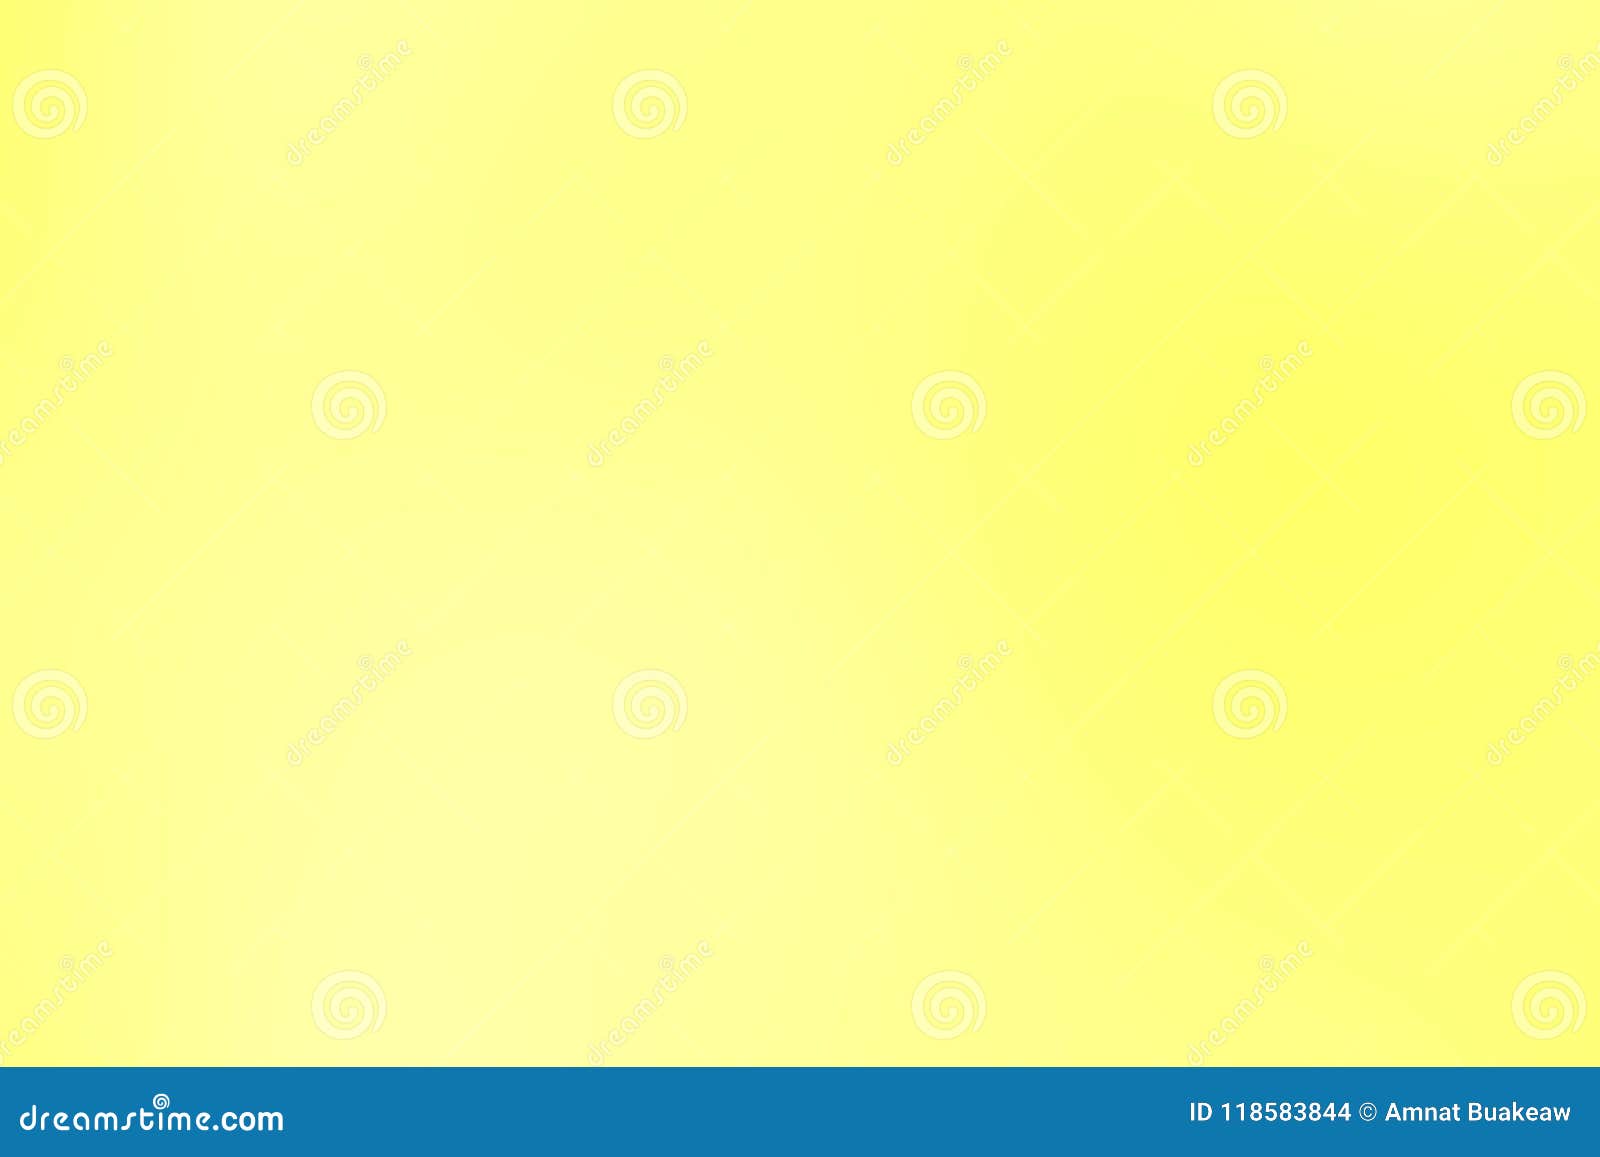 Unduh 880 Koleksi Background Warna Kuning Pastel Paling Keren